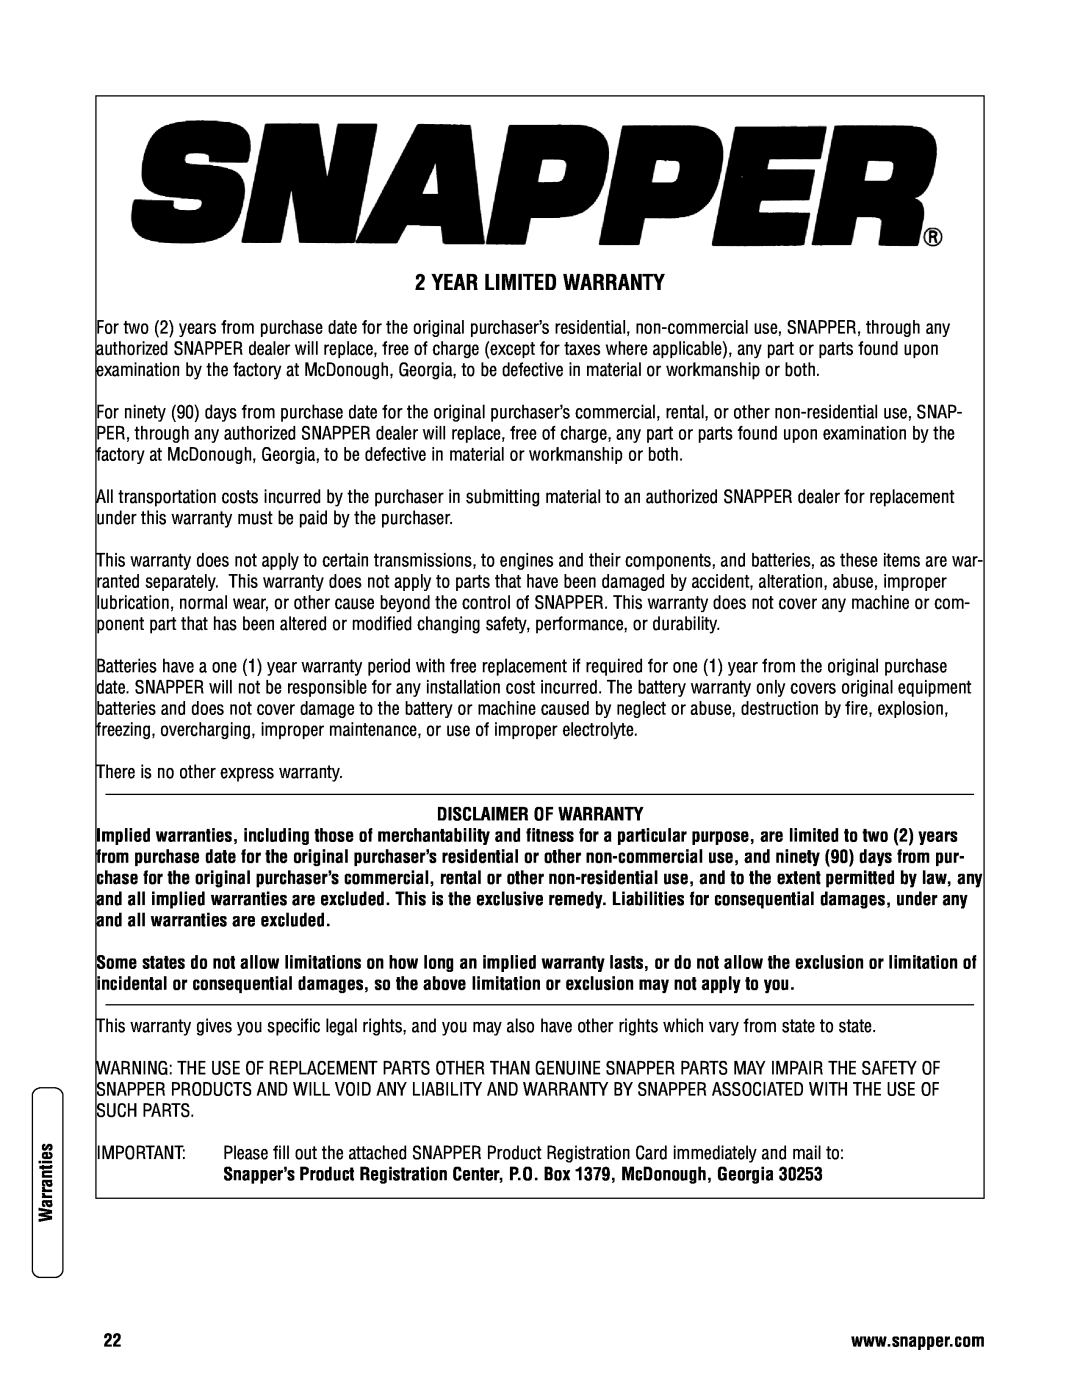 Snapper NP2167520B (7800438), 2167520B (7800428) specifications Year Limited Warranty, Warranties, Disclaimer Of Warranty 